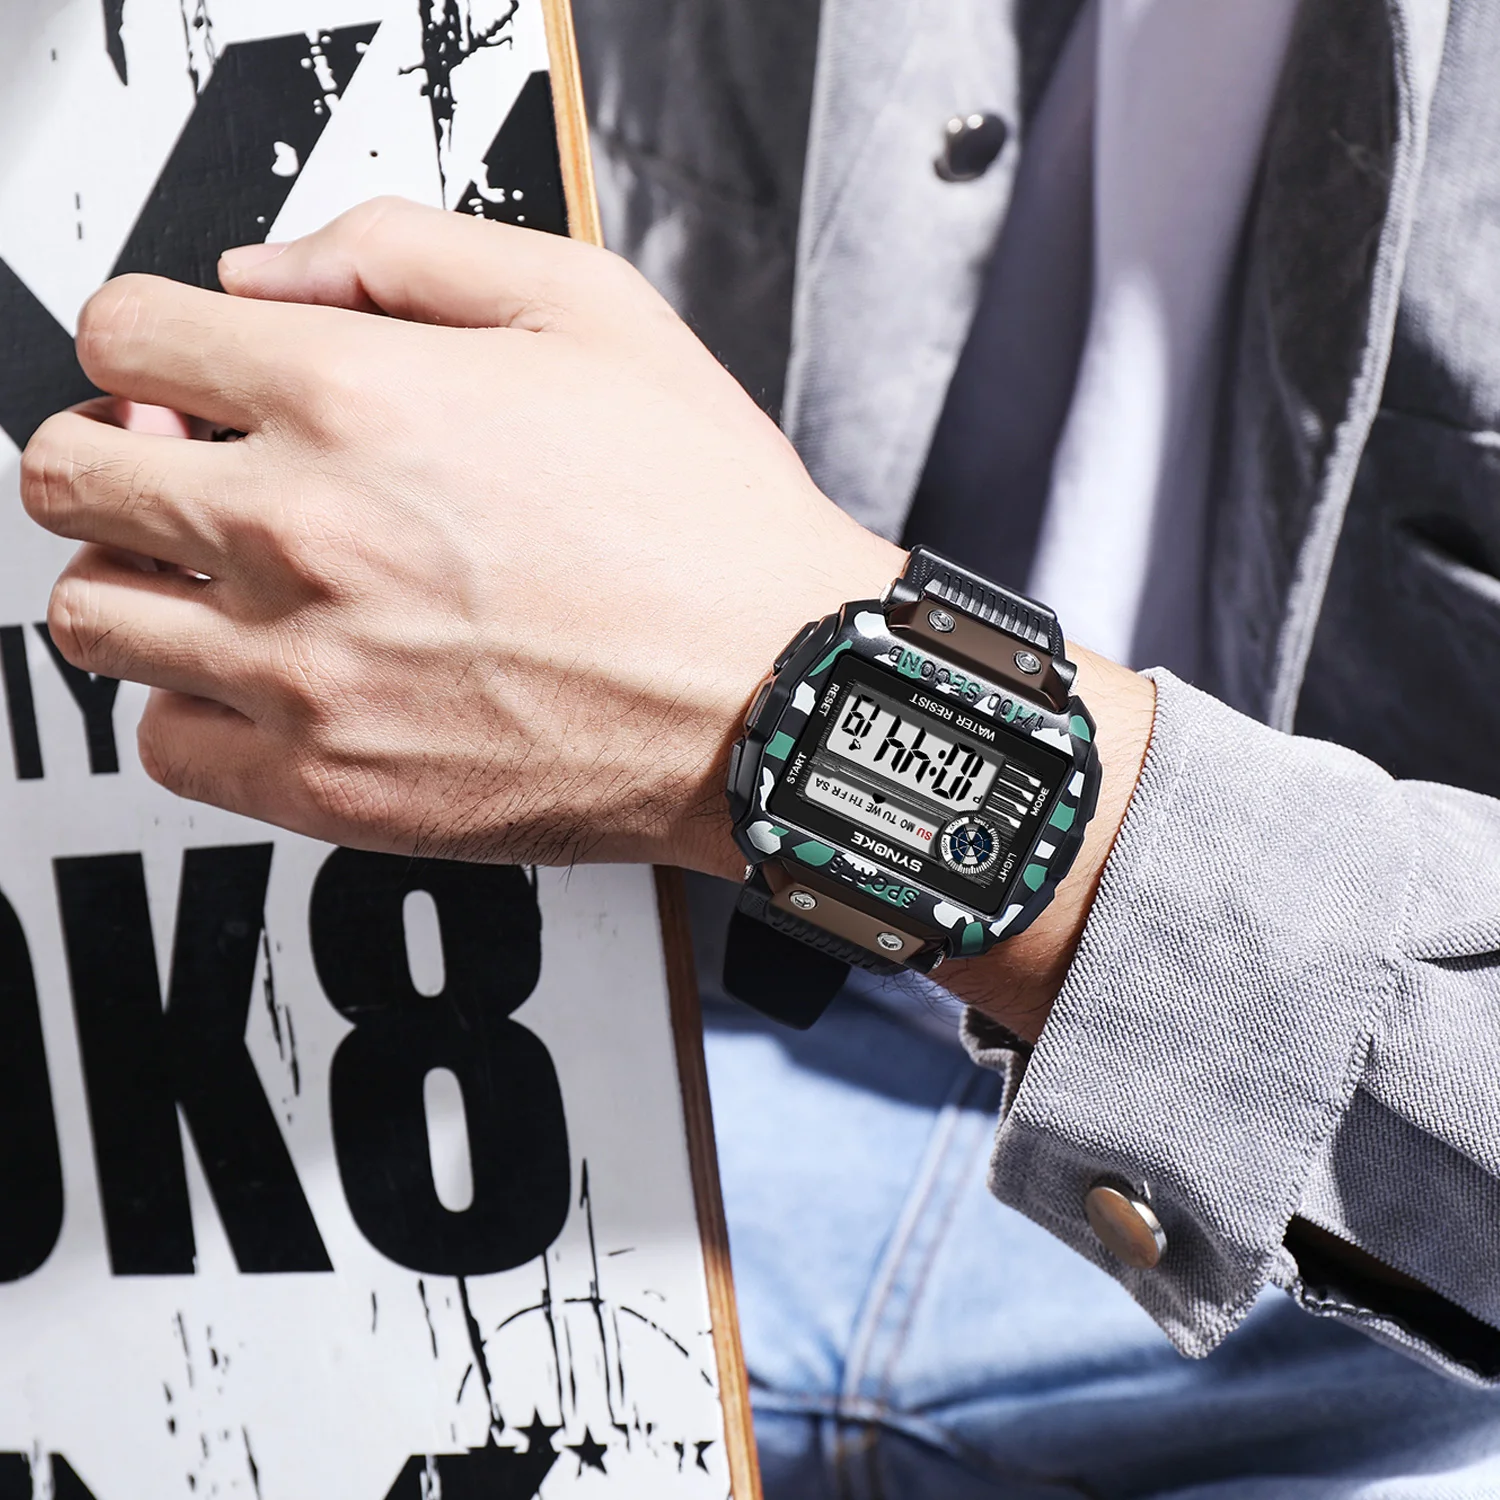 SYNOKE Нови мъжки спортни електронни часовници с голям екран 5ATM, водоустойчиви цифрови часовници, спортни часовници за мъже, мултифункционални ръчни часовници